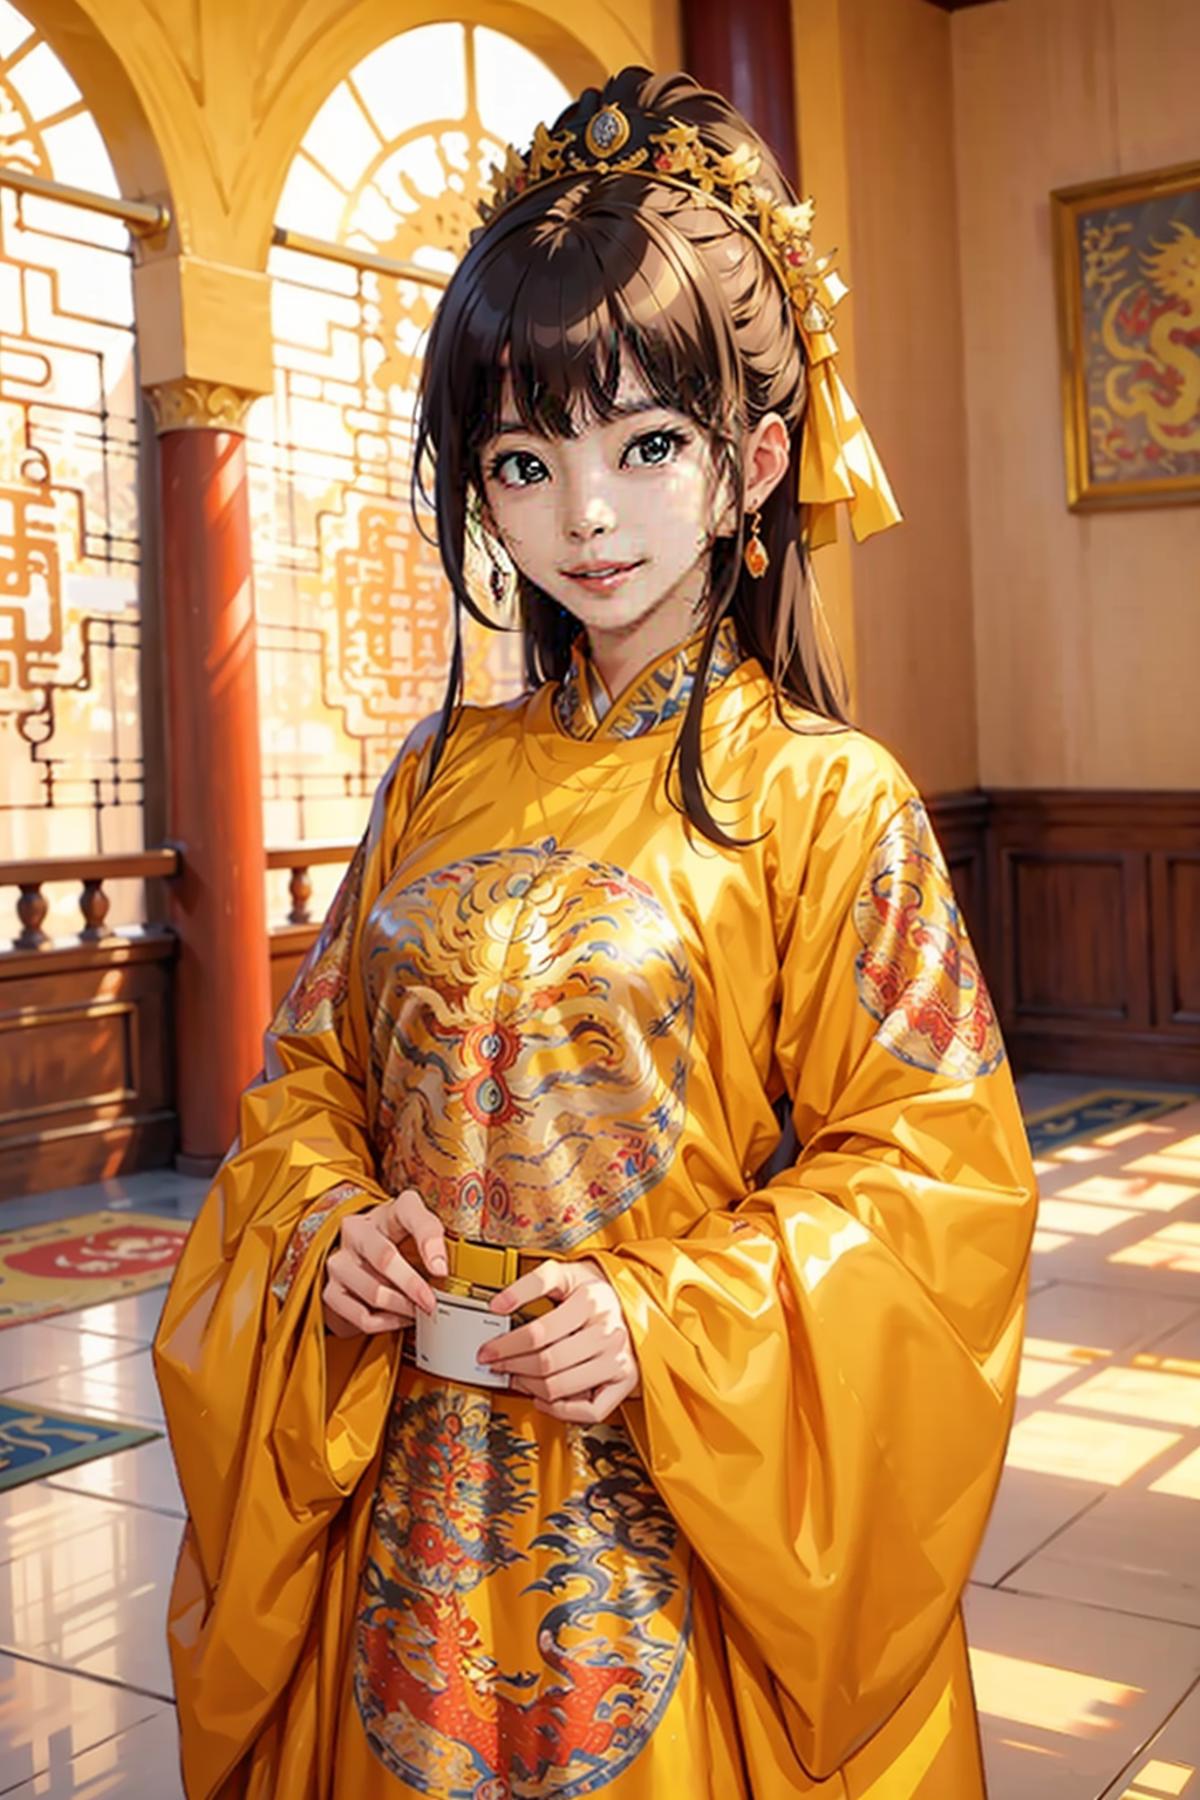 龙袍 | 龍袍 | dragon gown image by Oraculum